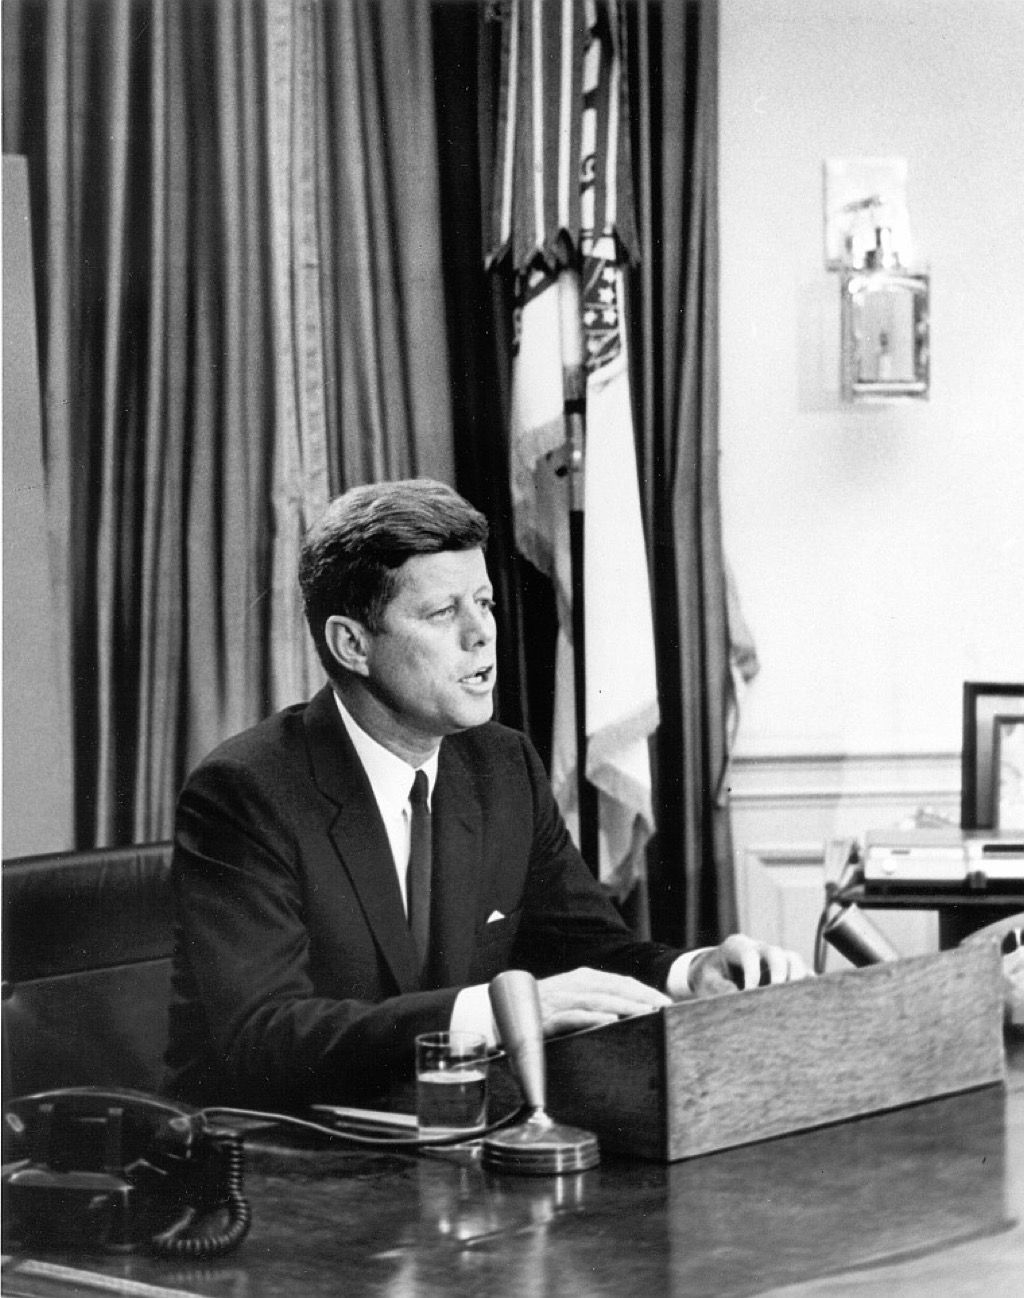 JFK praat in het ovale kantoor, wat de regering verbergt